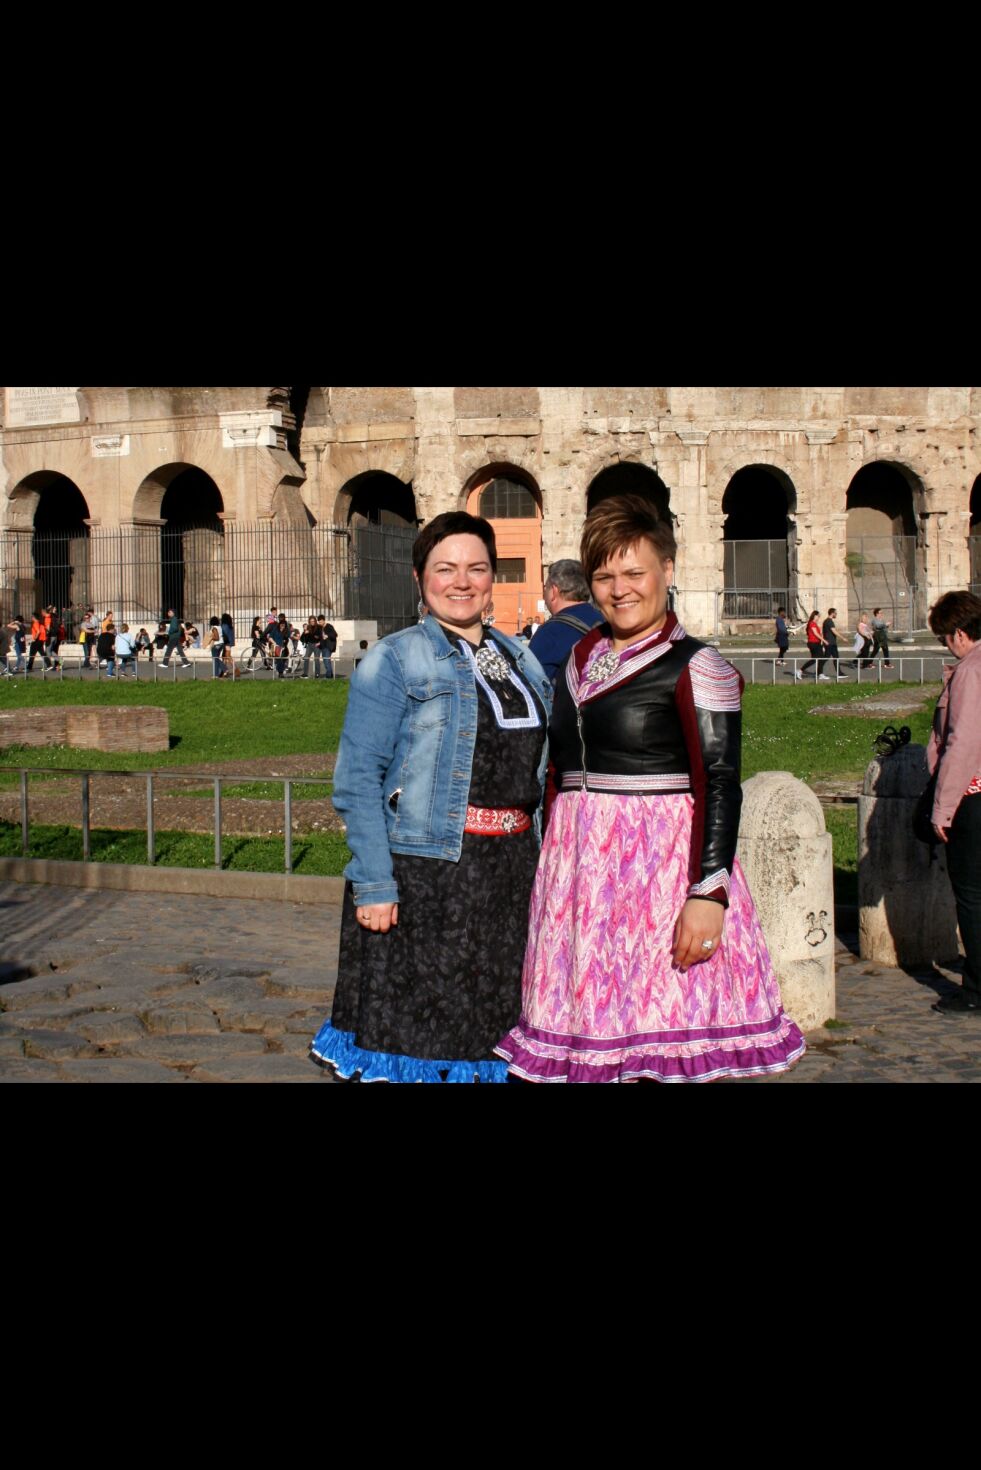 I programmet «Min første ferie» på TV2 får vi førstkommende søndag se venninnene Marie Louise Hætta Lantto fra Alta og Sara Ellen Anne Buljo Eira fra Máze, her foran den gamle amfi-scenen Colosseum i Roma.
 Foto: PR-foto TV2